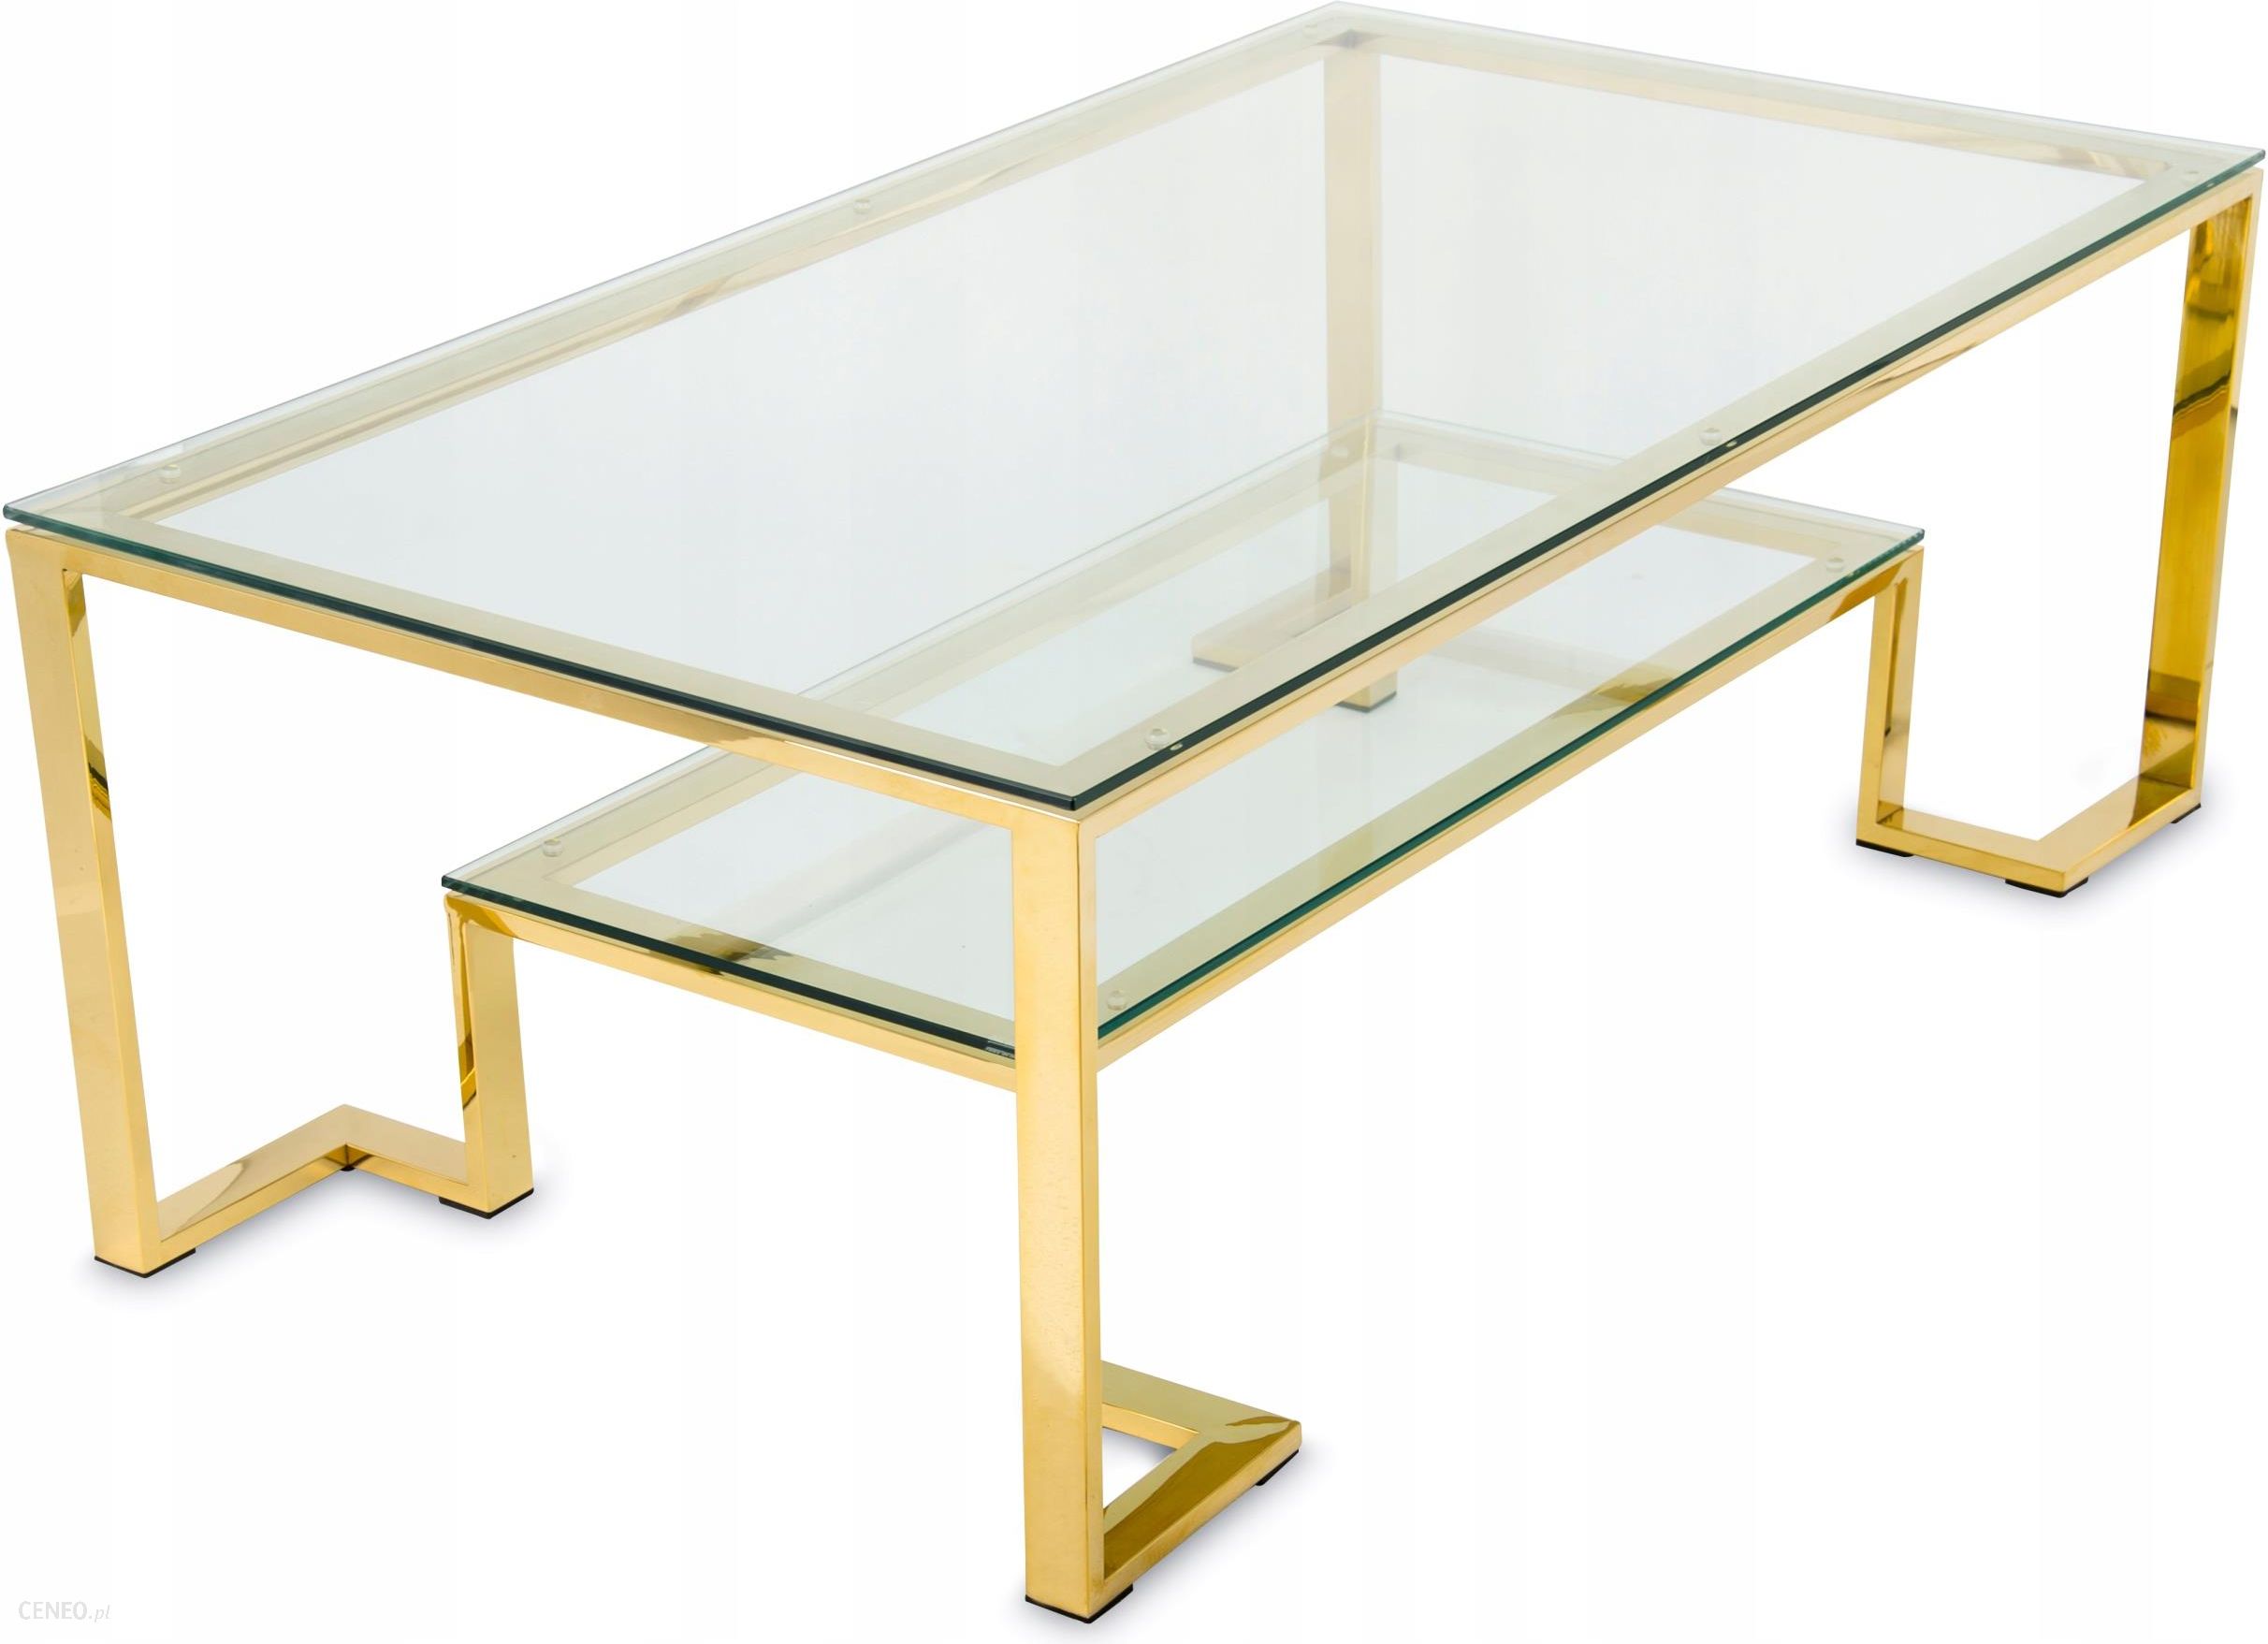 Столик с золотом. Журнальный столик золото стекло. Журнальный столик стеклянный прямоугольный. Стол золотой со стеклом. Стол журнальный прямоугольный со стеклом.